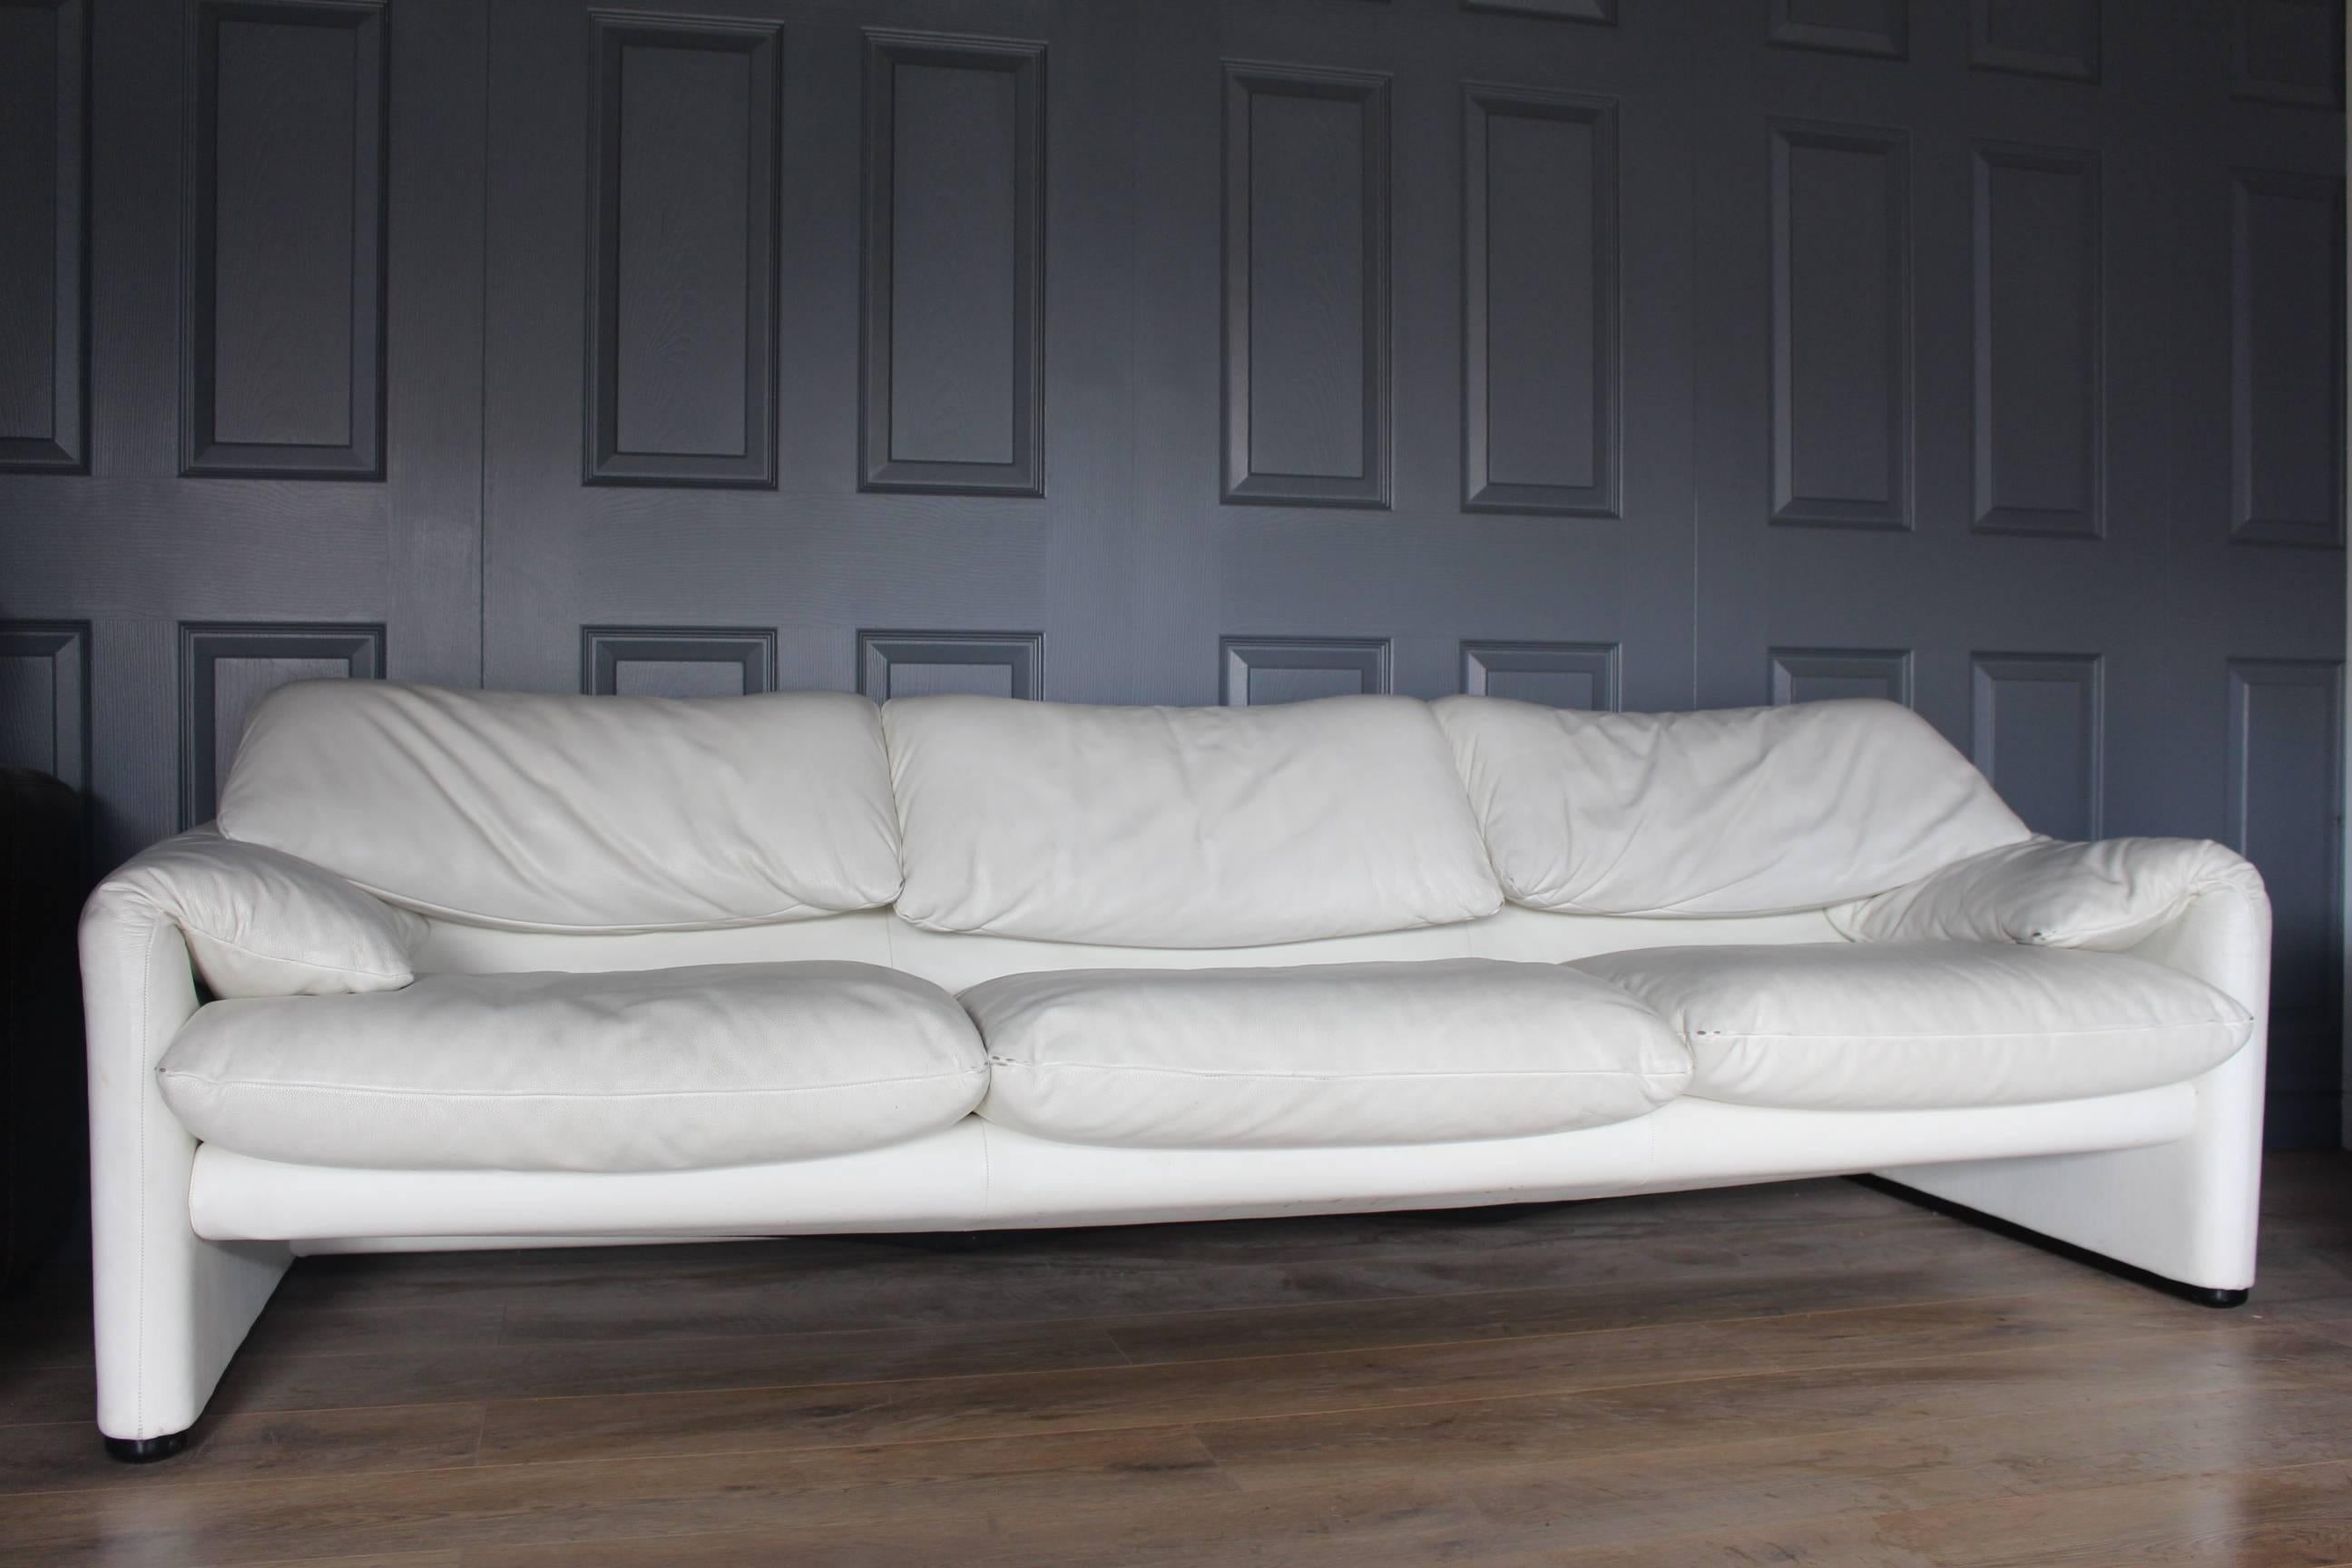 Designer Cassina Maralunga by Vico Magistretti White Leather Sofa 1